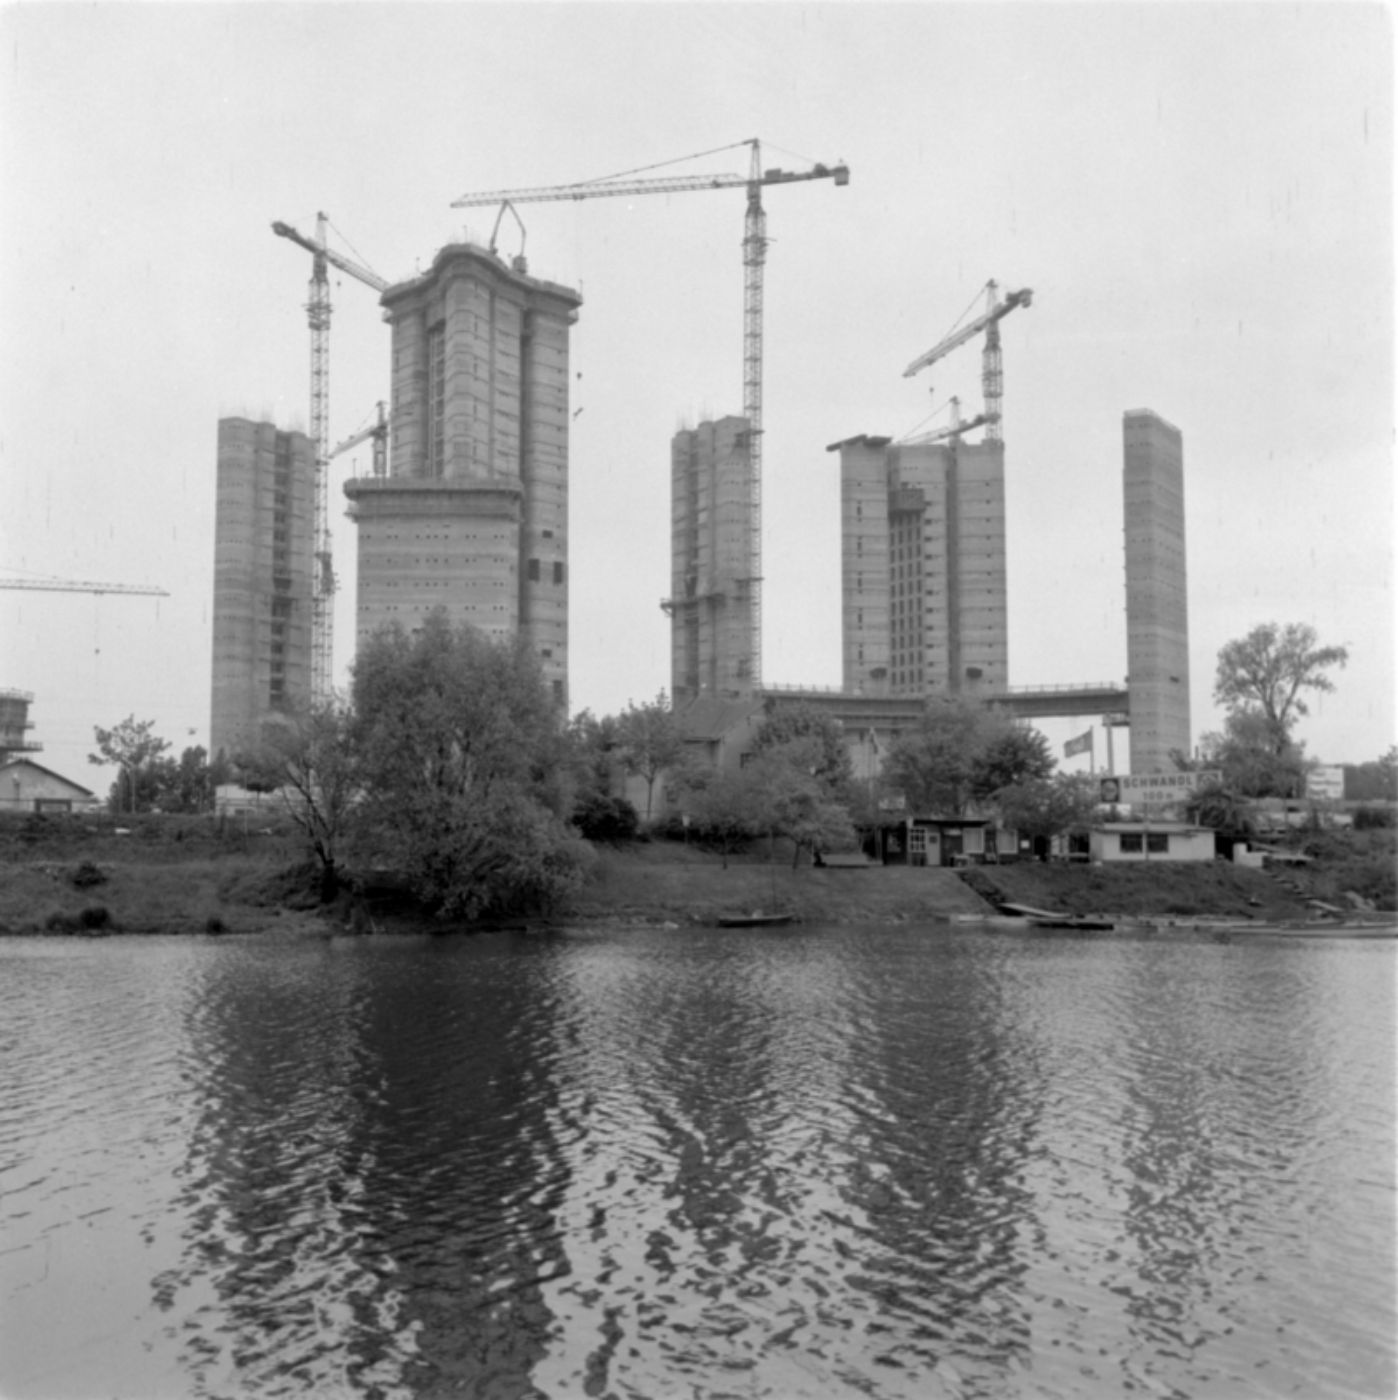 Schwarz-weiß-Foto zur Illustration. Das Bild zeigt mehrere Hochhäuser und Baukräne im Hintergrund. Im Vordergrund ist die Donau zu sehen.